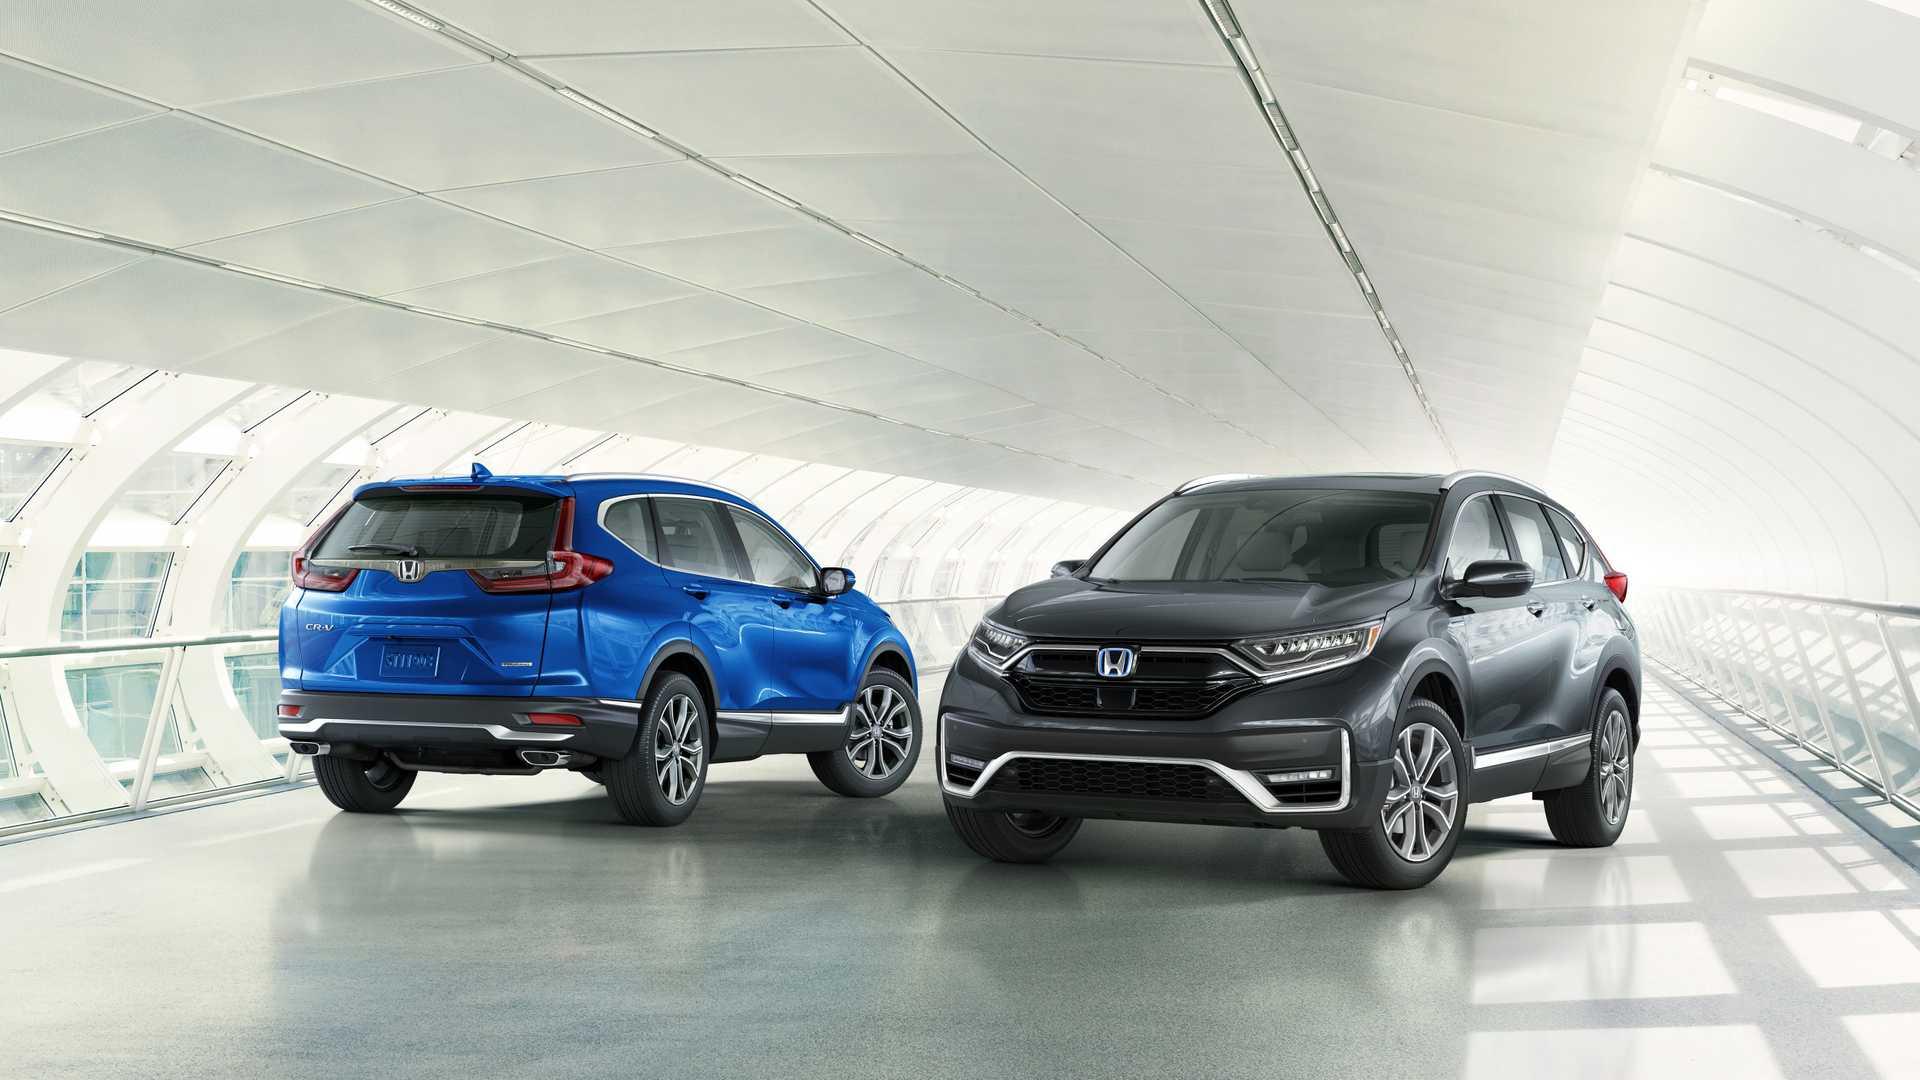 Honda CR-V Hybrid 2020 เปิดตัวพร้อมราคาน่ารัก ต่างประเทศเริ่มแค่ไม่ถึง 9 แสน